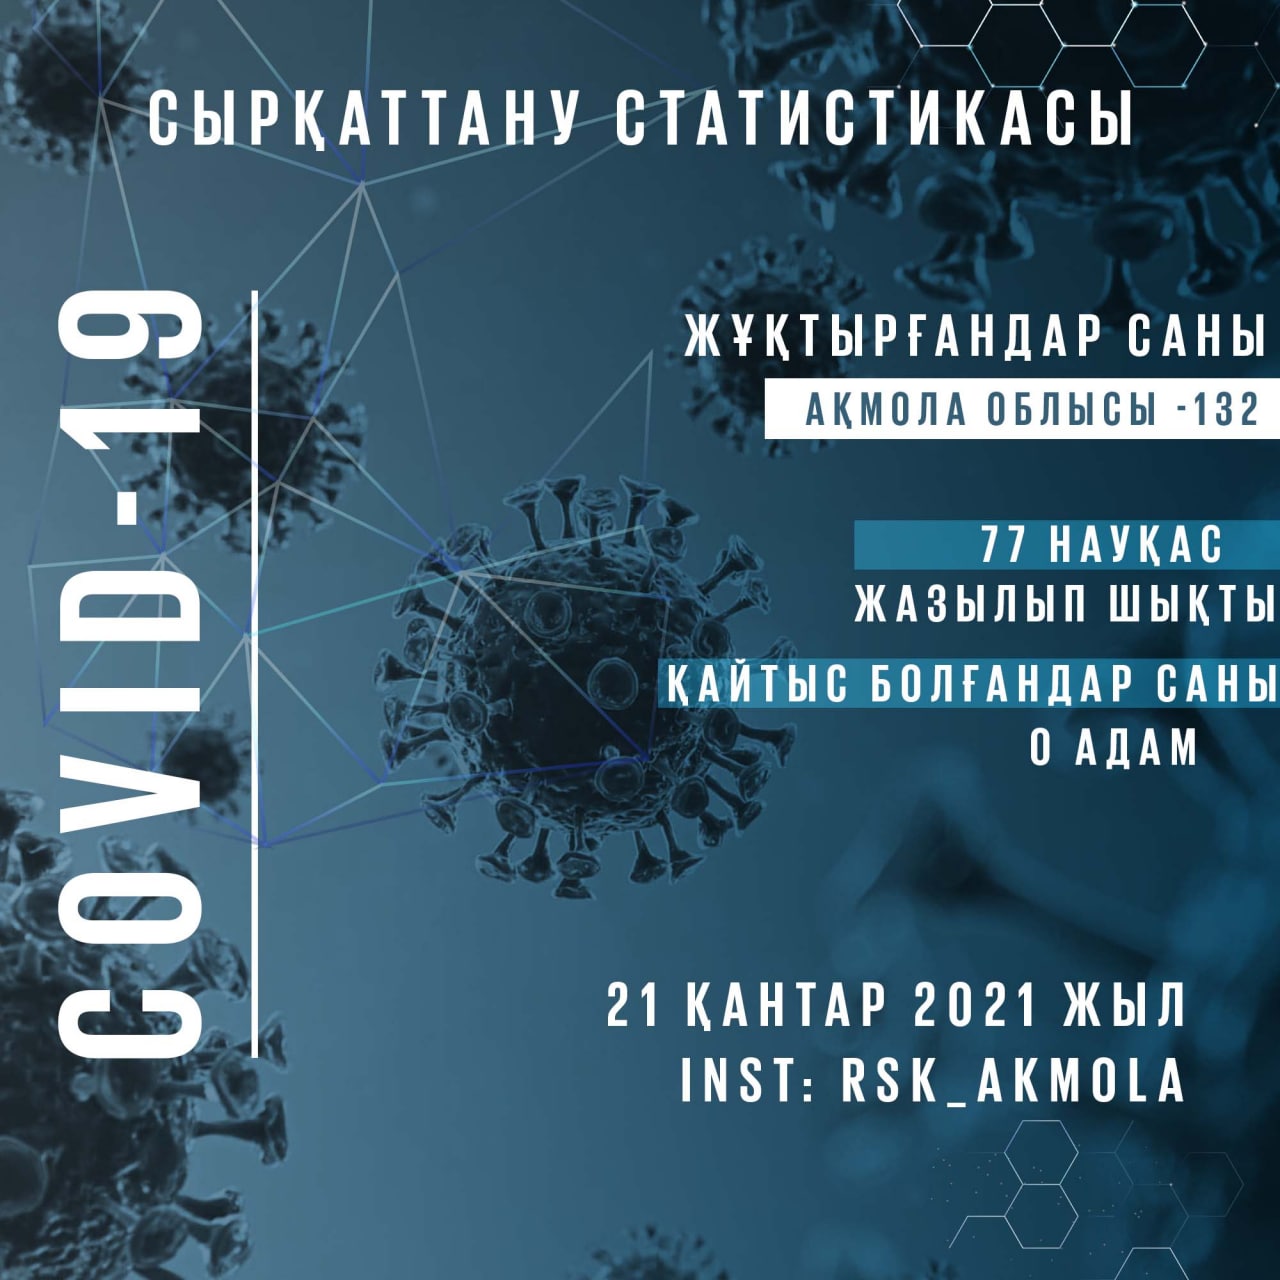 Ақмола облысы бойынша 2021 жылдың 21 қаңтарына коронавирустық инфекция белгілері бар пневмониямен сырқаттанушылық туралы ақпарат